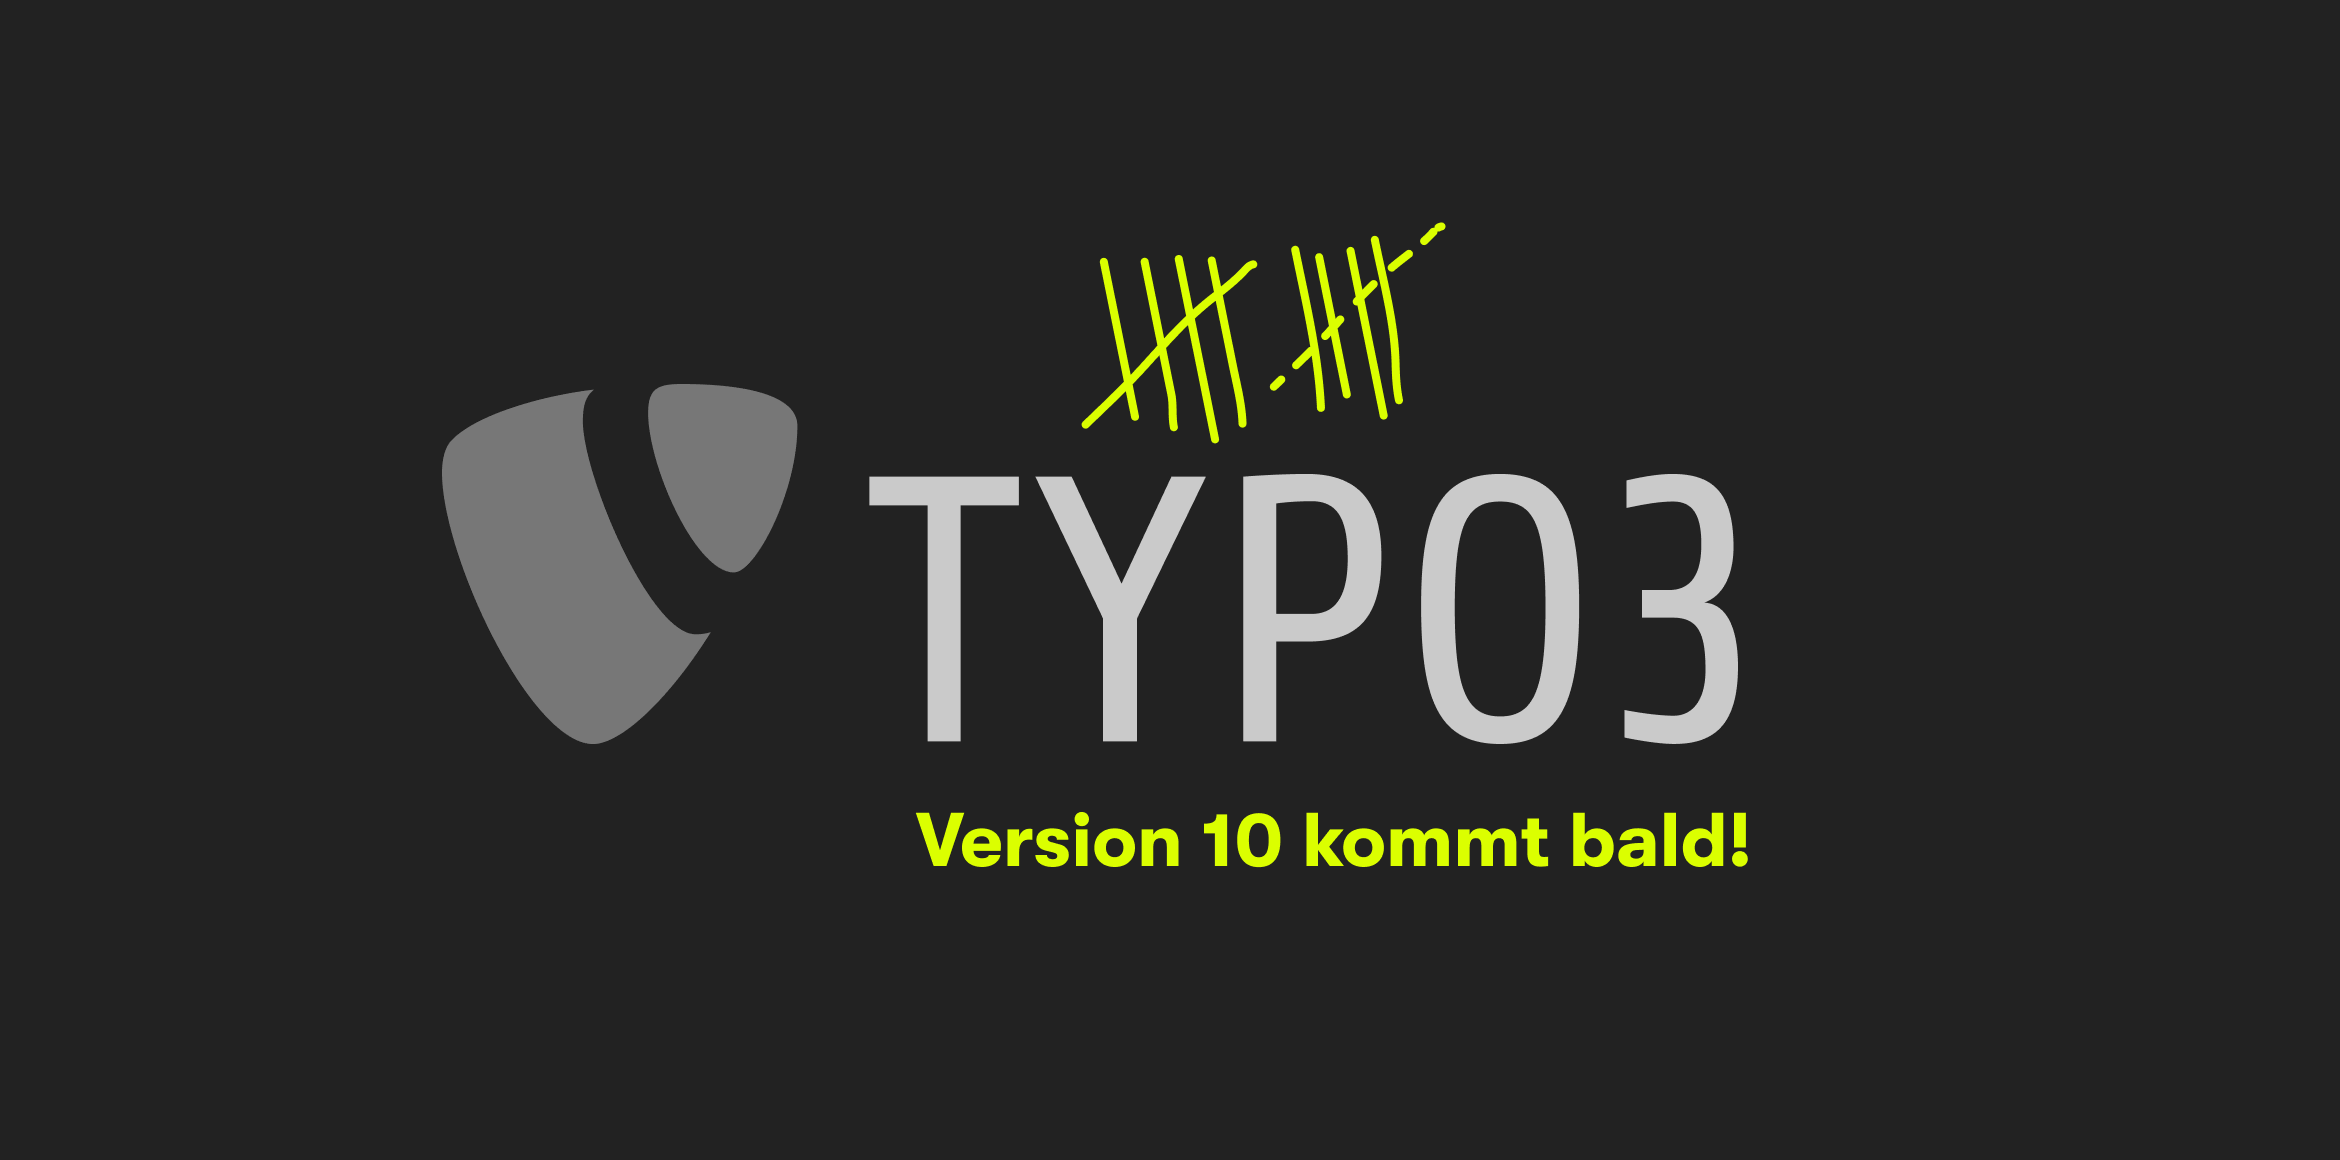 Weißes Typo 3 Logo auf schwarzem Hintergrund. Darunter steht: Version 10 kommt bald